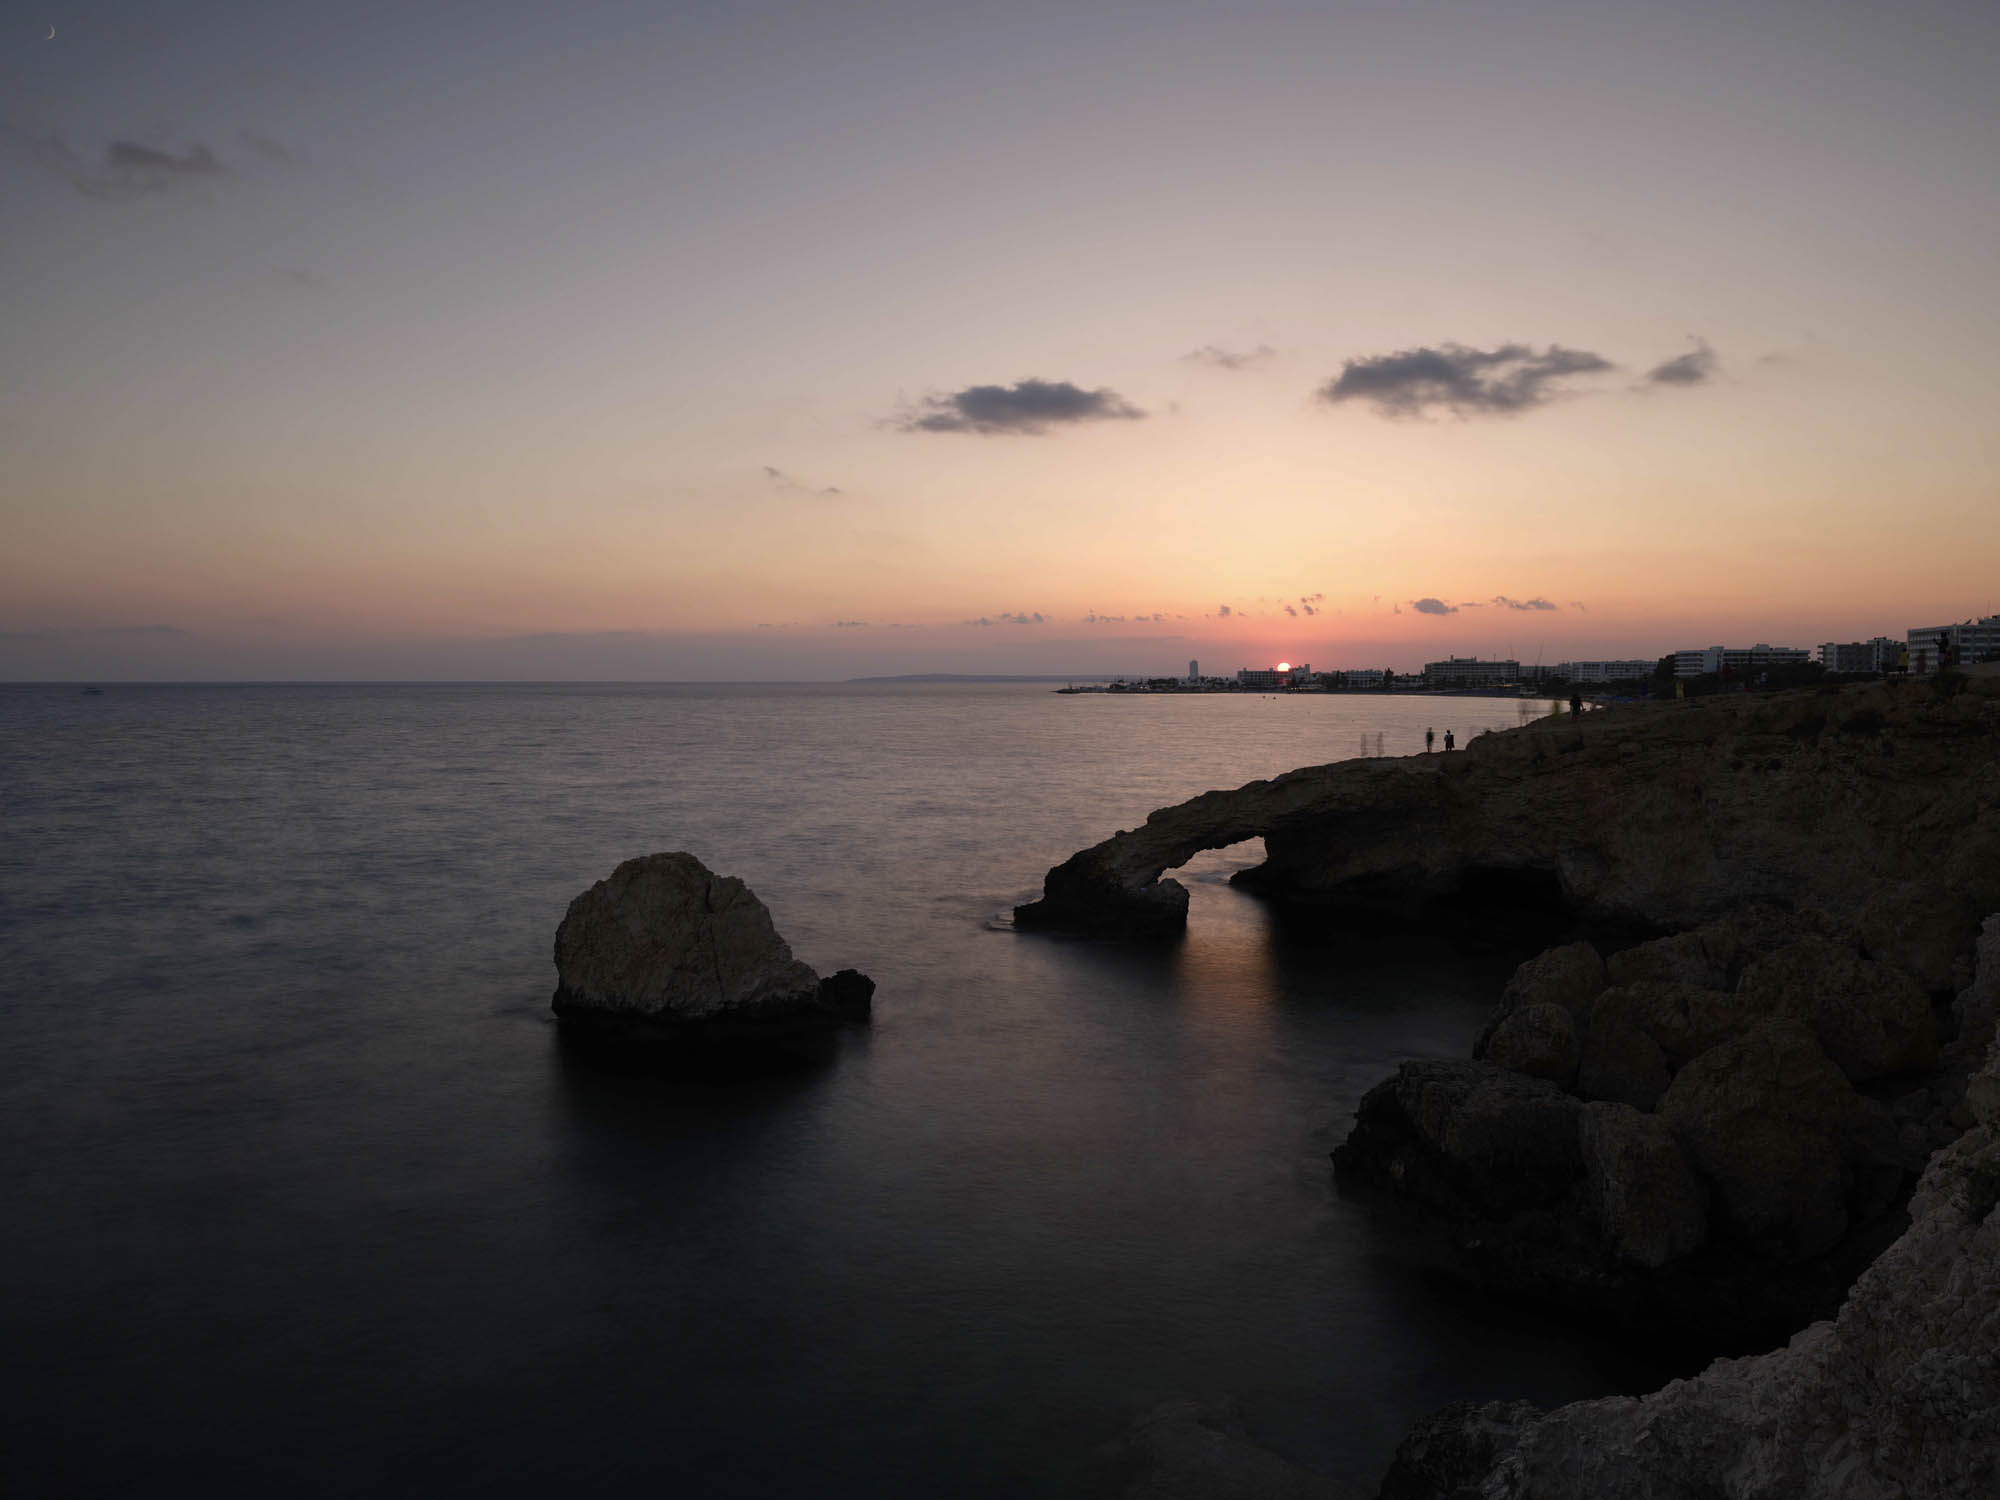 łuk miłości, słynna formacja skalna na cyprze w świetle zachodzacego słońca